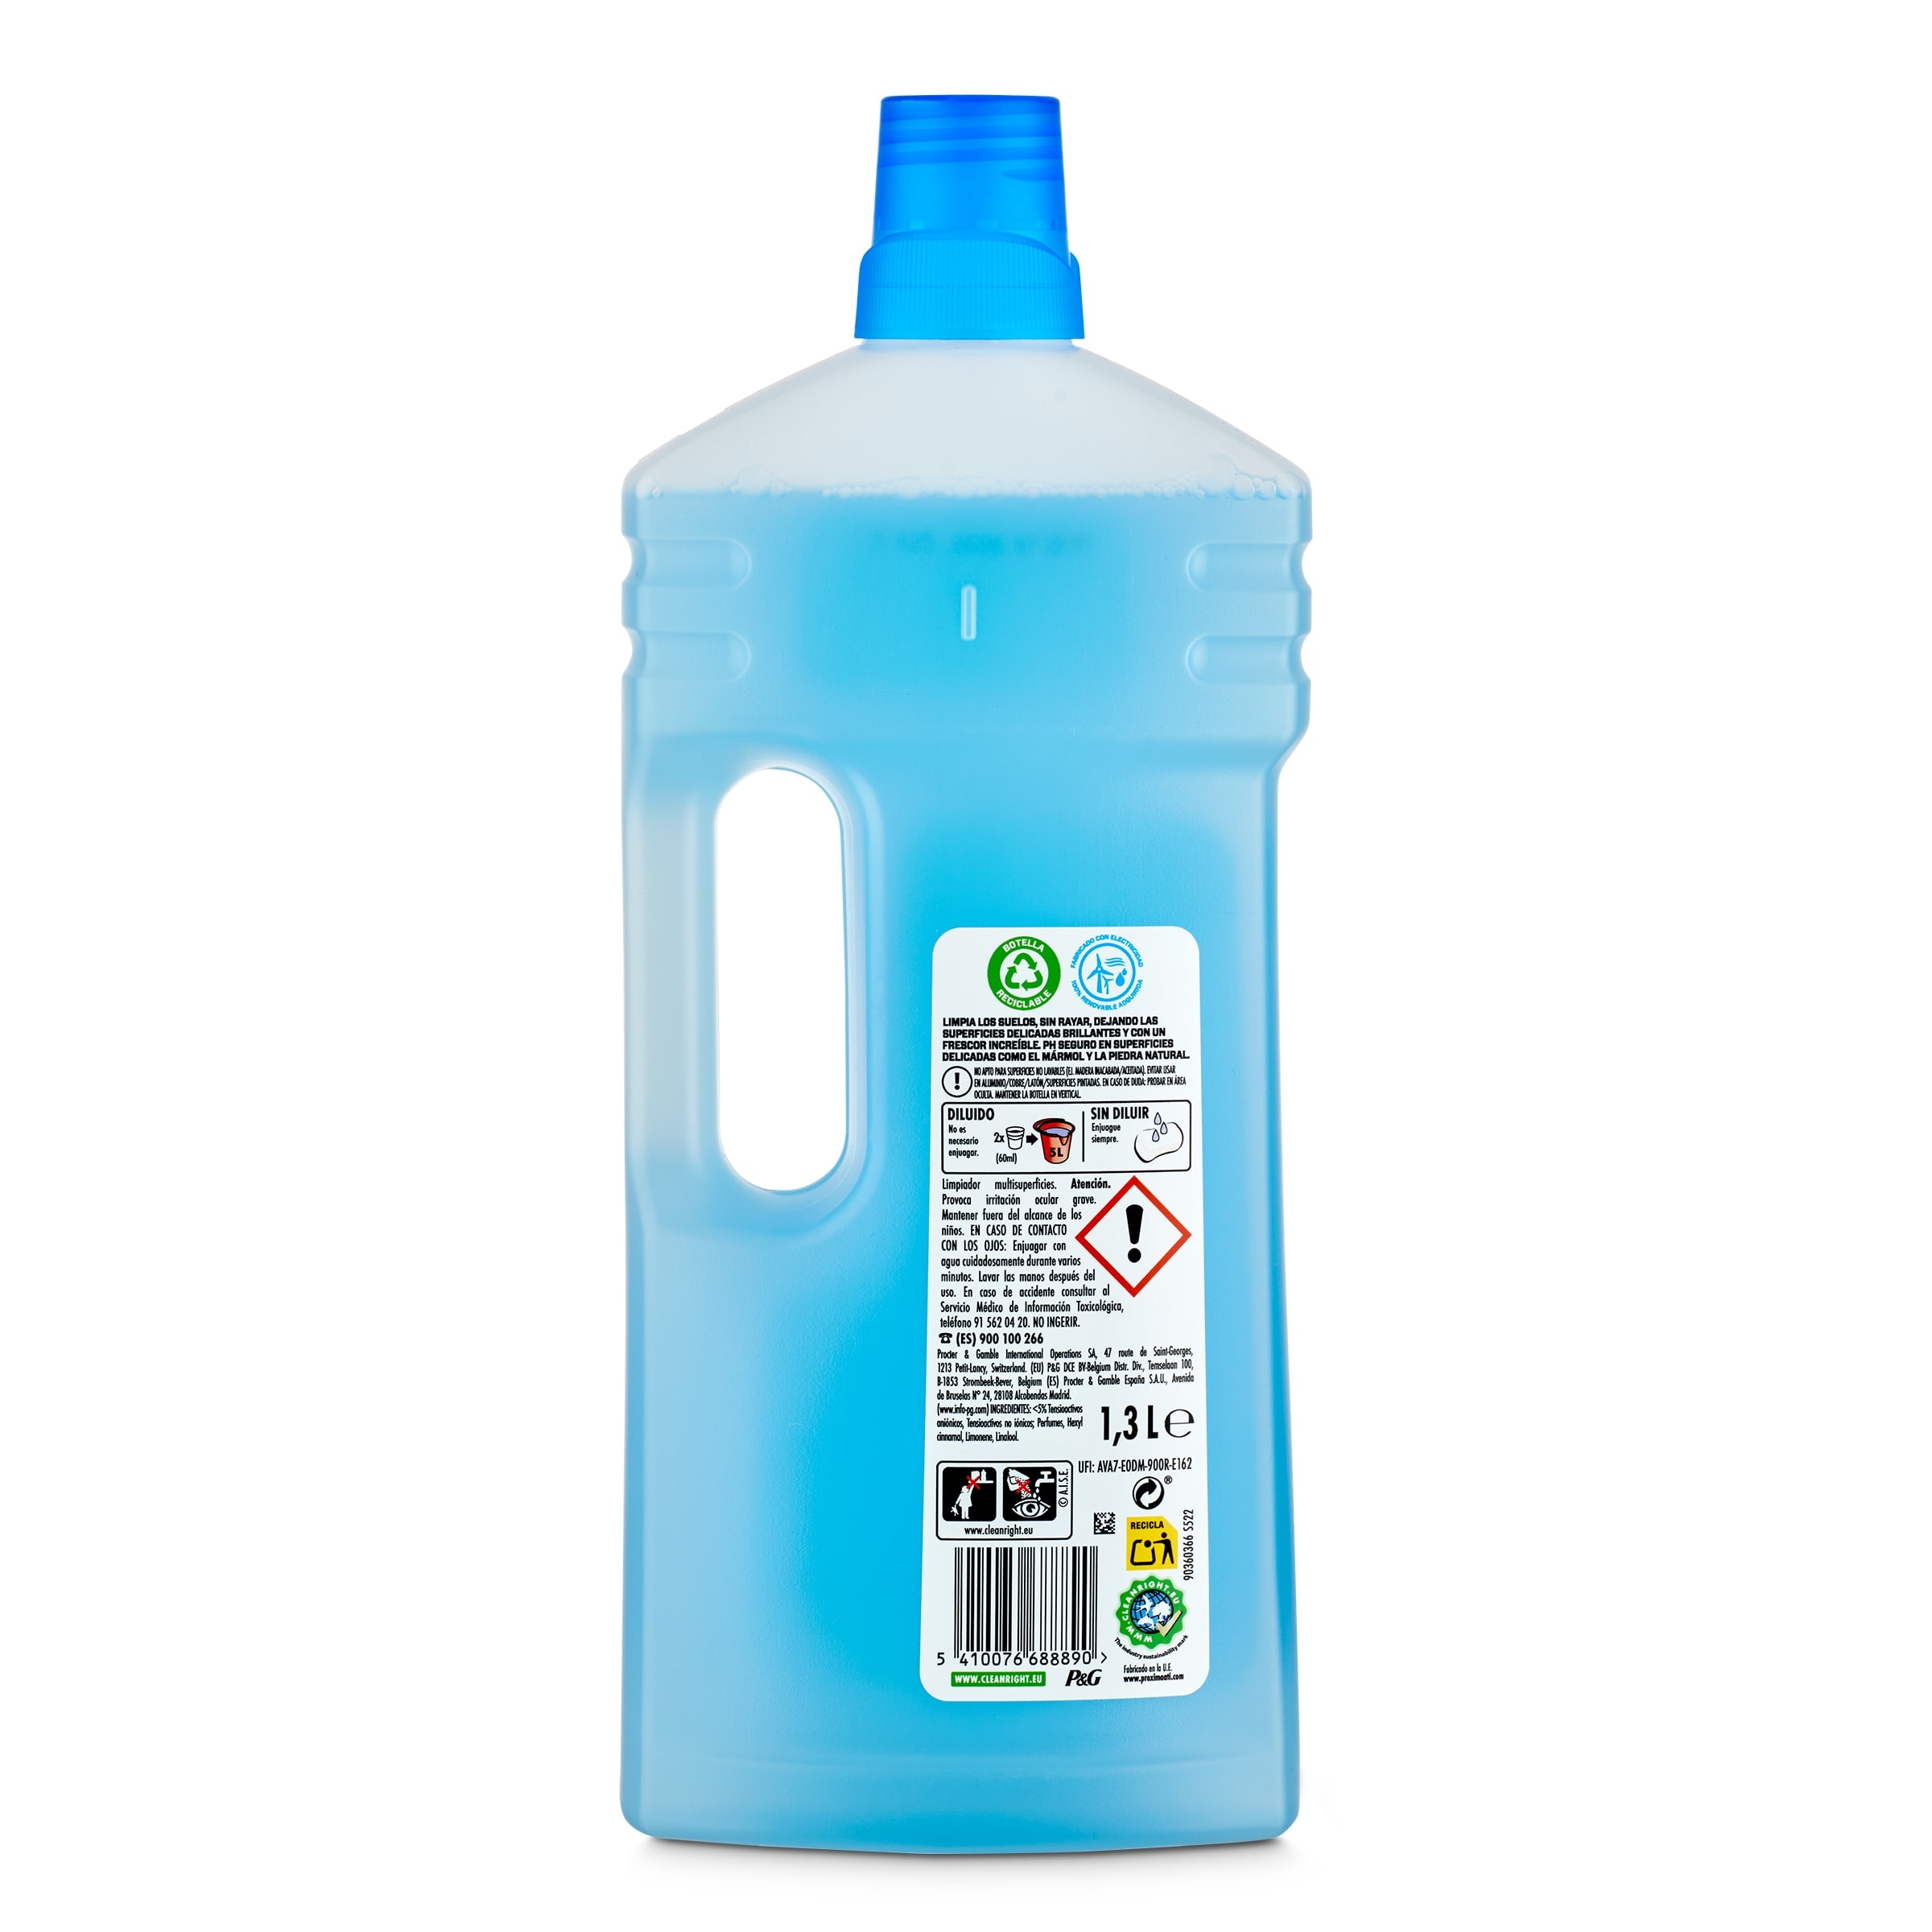 Limpiador multiusos Don Limpio botella 1.3 l - Supermercados DIA